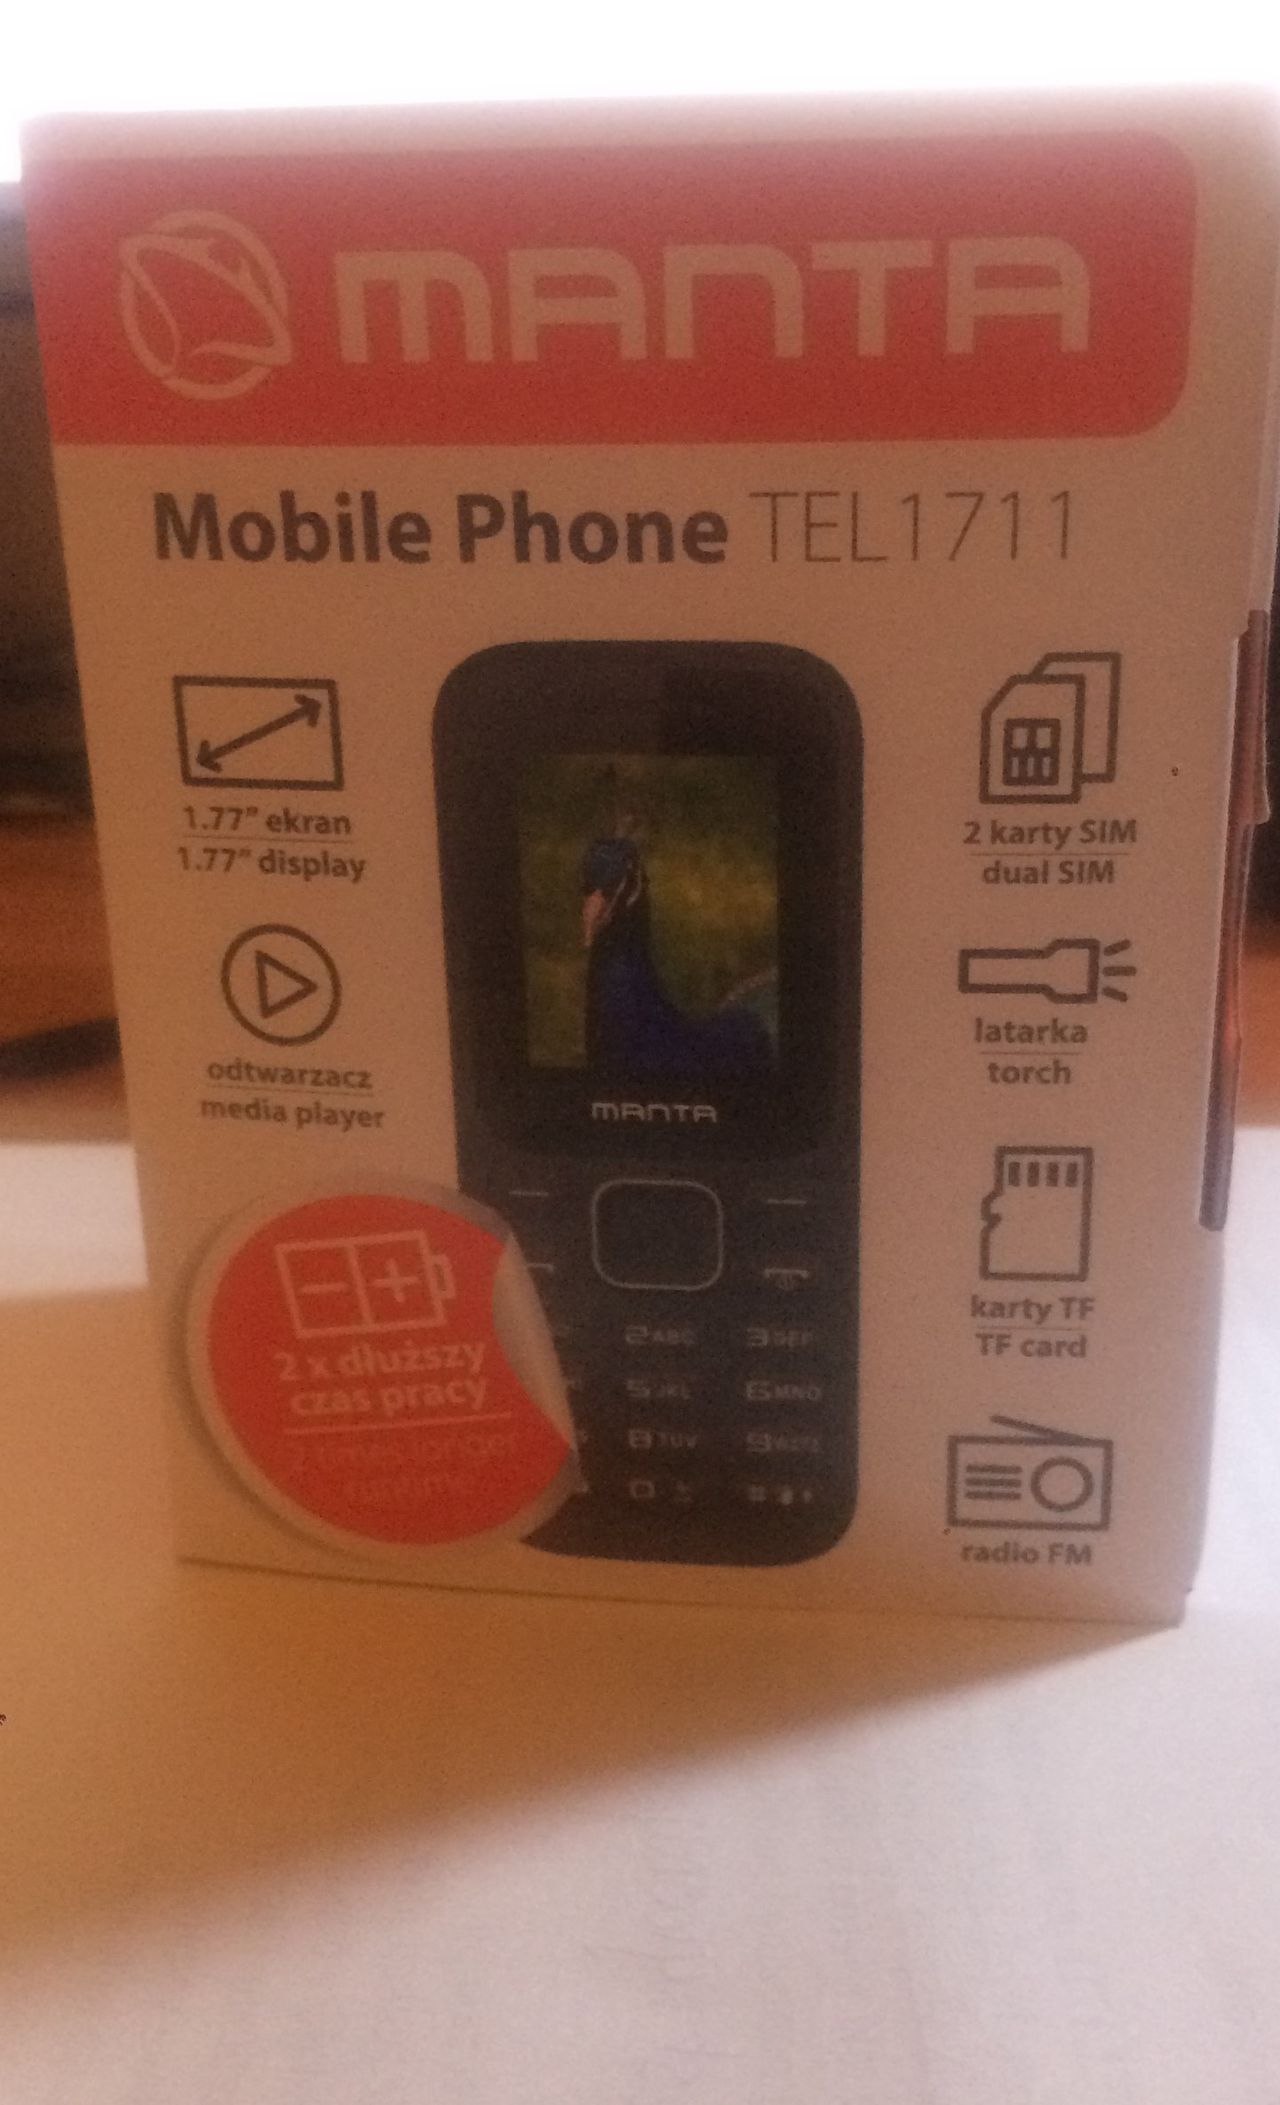 Pudełko nie pokazuje, że się spotykamy z najtańszym telefonem na rynku